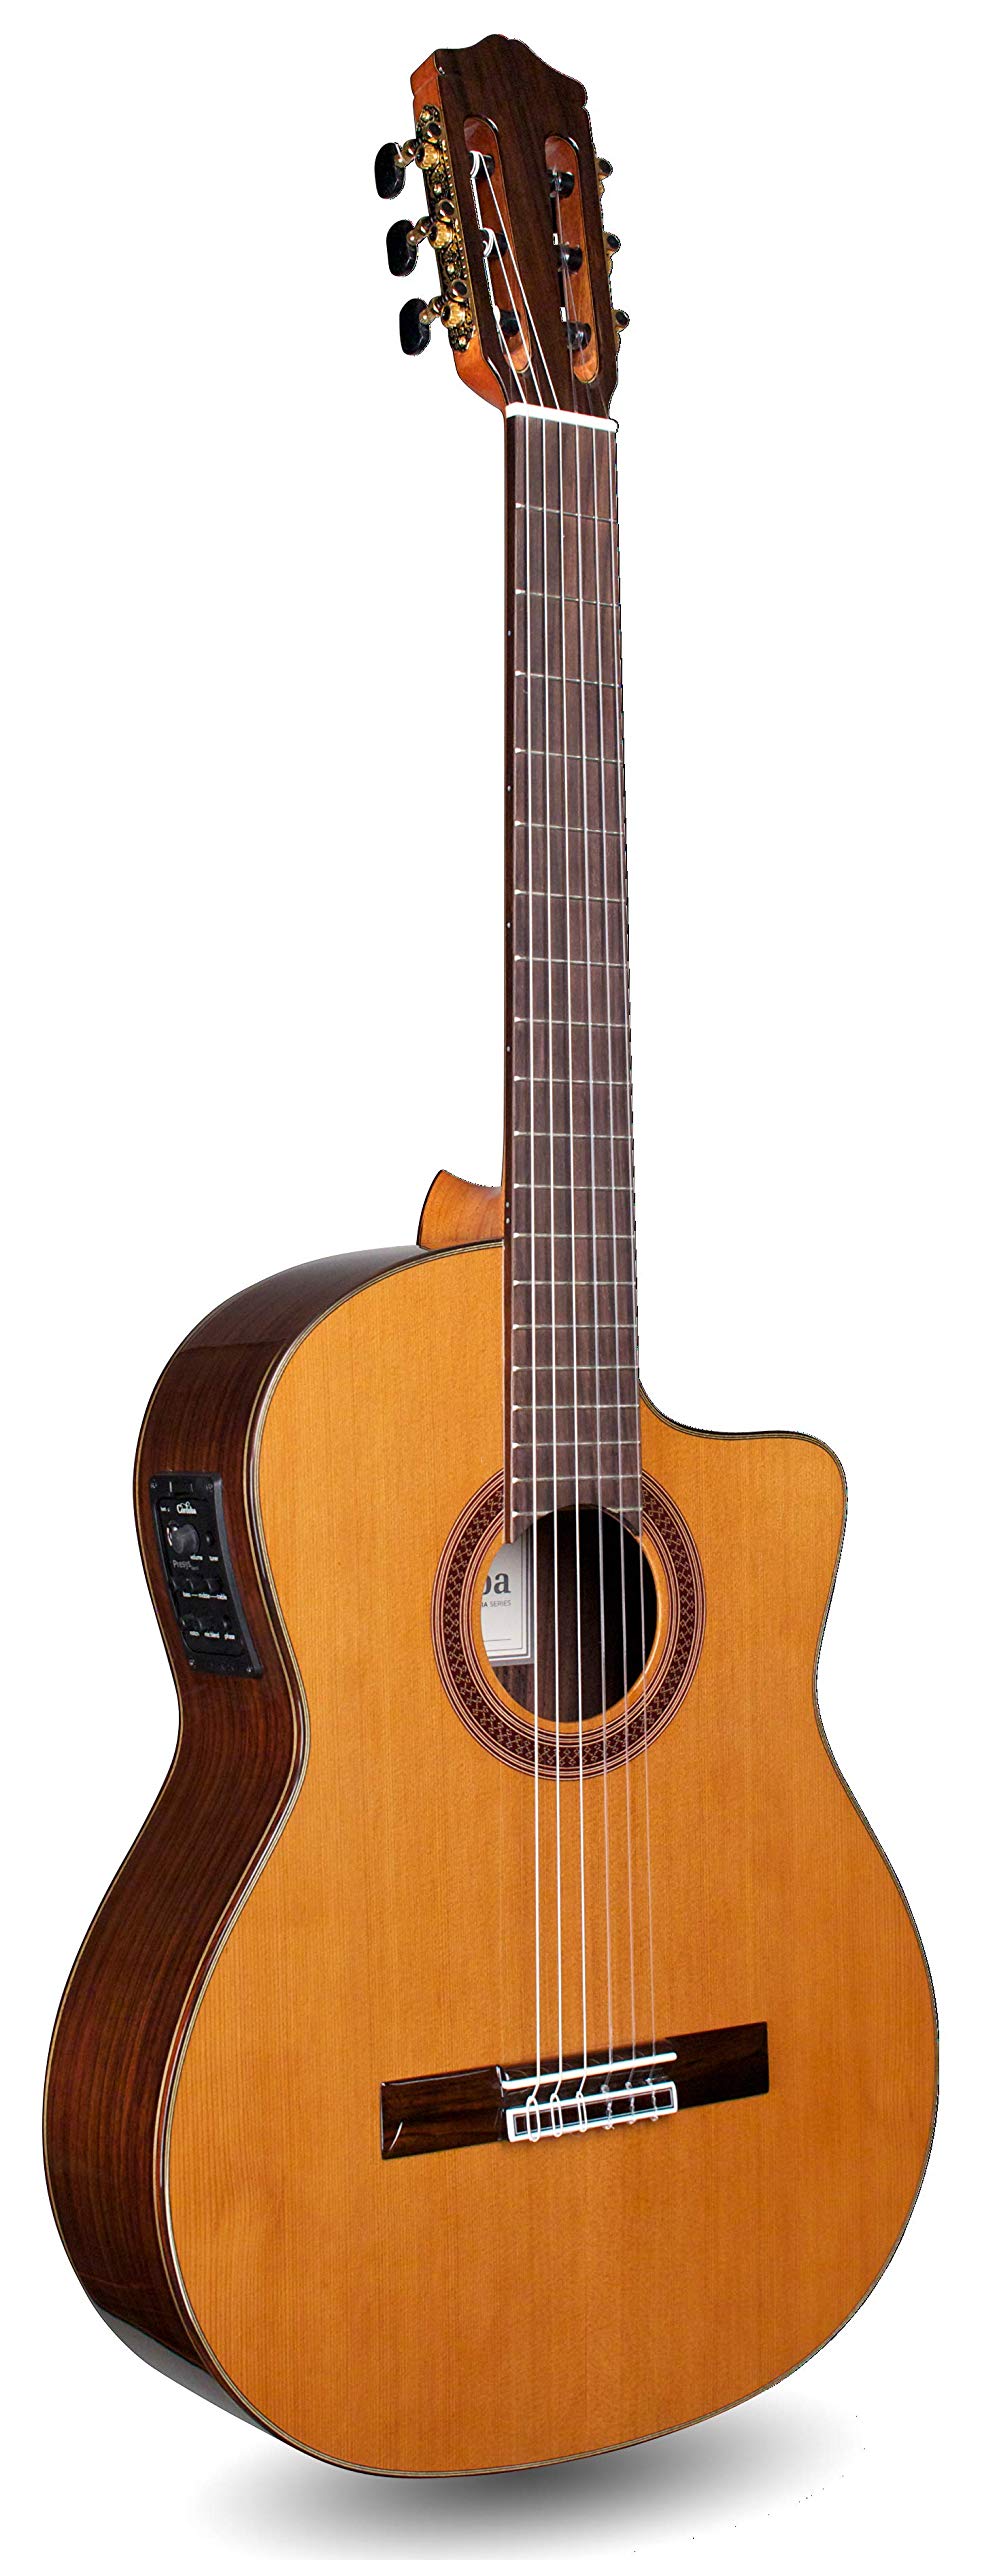 Cordoba Guitars Gitara klasyczna Cordoba C7 z nylonowymi strunami akustycznymi